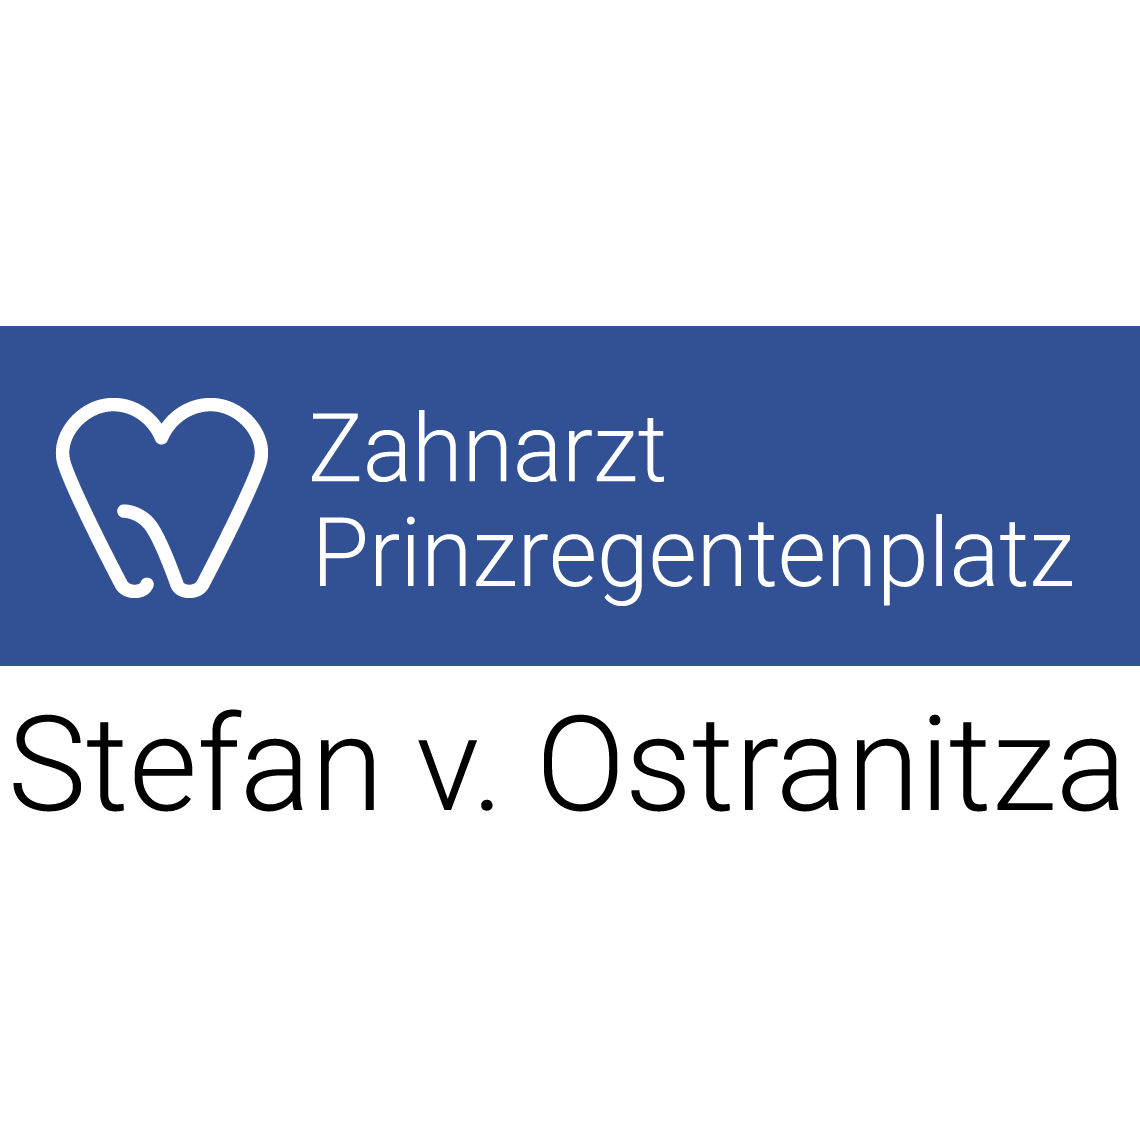 Zahnarztpraxis Stefan von Ostranitza | Zahnarzt Zahnersatz Parodontologie | München - Haidhausen  